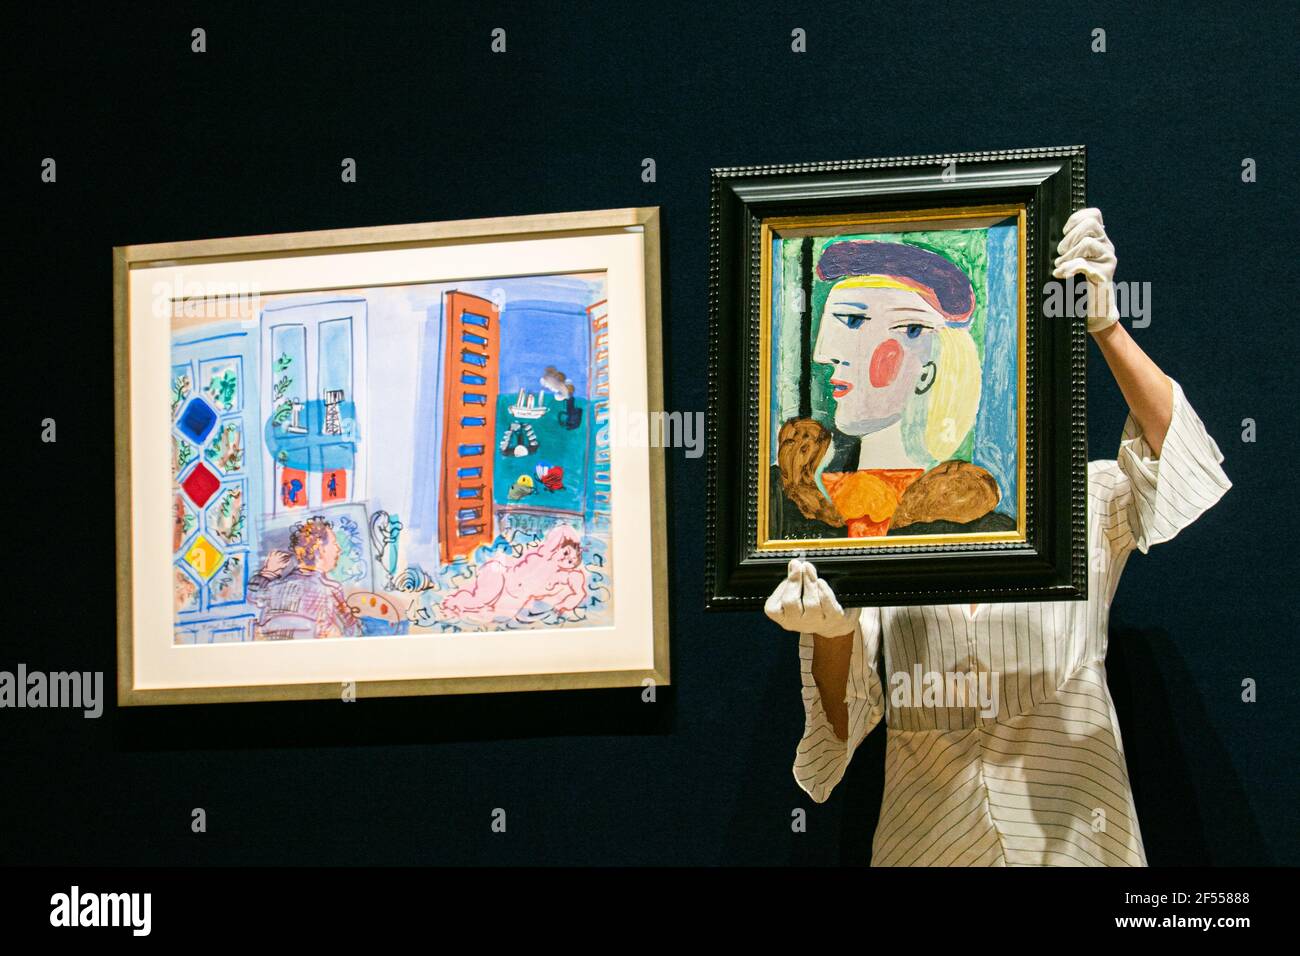 NEW BOND STREET LONDON, GROSSBRITANNIEN 24. MÄRZ 2021. BONHAMS FOTOCALL: GROSSES PICASSO-PORTRÄT SEIT 40 JAHREN NICHT MEHR GESEHEN.Femme au Béret Mauve, 1937 von Pablo Picasso. Schätzung: $10.000.000-15.000.000 mit Raoul Dufy (1877-1953) L'Atelier de l'artiste au Havre, Gouache und Aquarell . Schätzung: £120.000-180.000. Das Picasso-Porträt, das fast 40 Jahre lang nicht gesehen wurde, wird in Städten auf der ganzen Welt gezeigt, bevor es am Donnerstag, dem 13. Mai, im Bonhams Impressionist and Modern Art Sale in New York zum Verkauf angeboten wird. Credit amer ghazzal/Alamy Live News Stockfoto